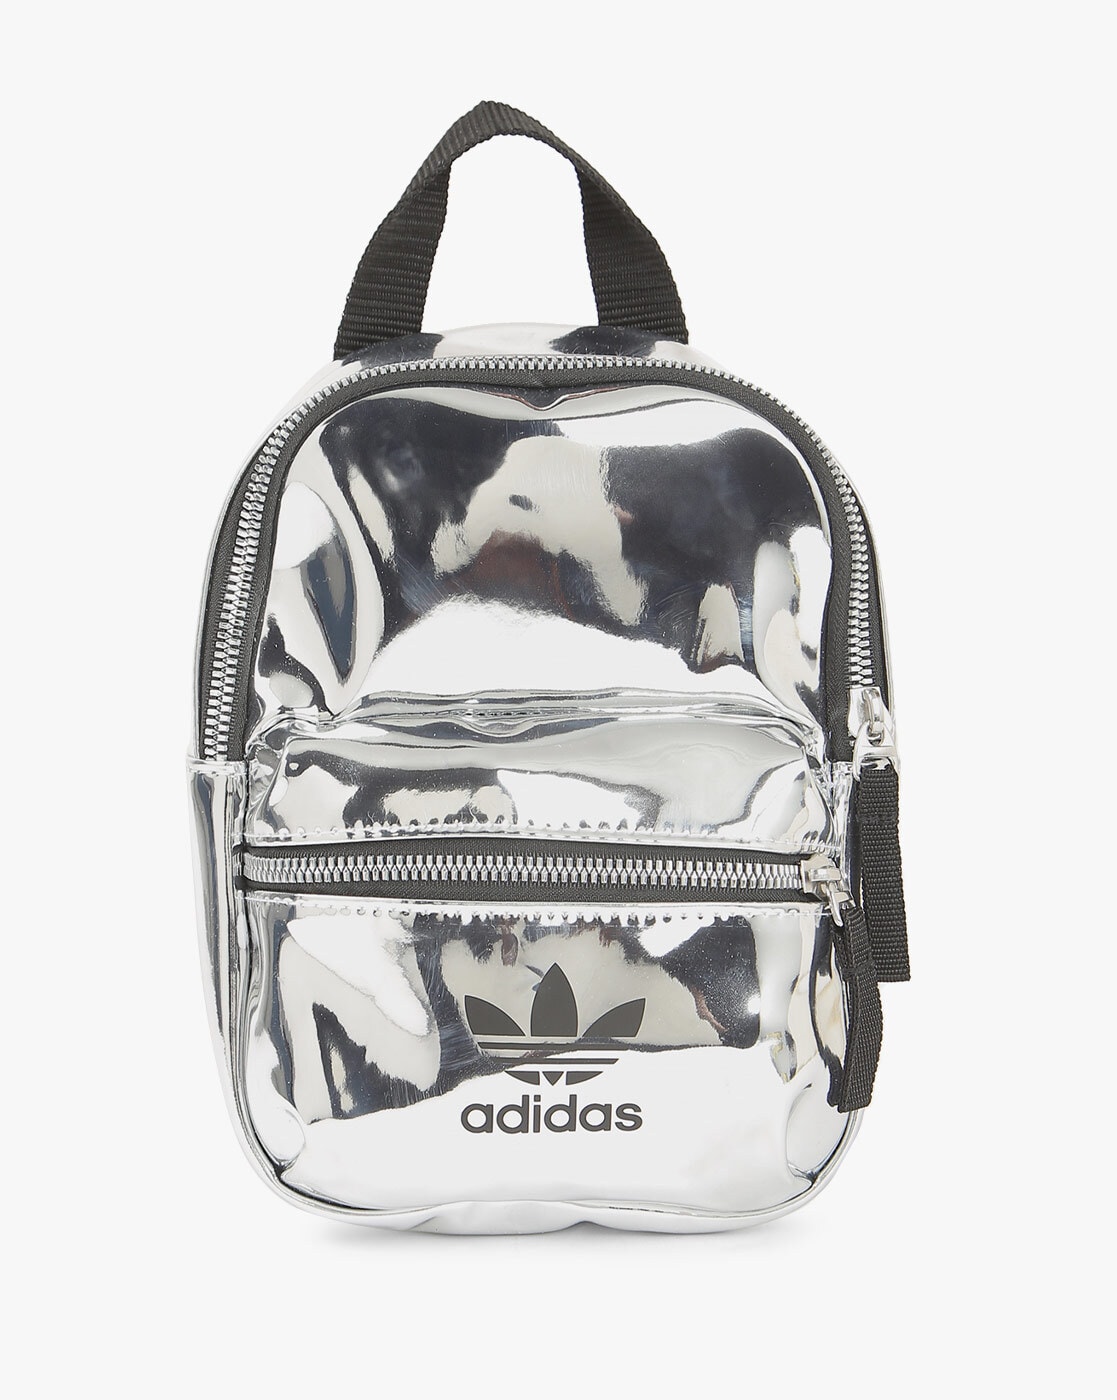 metallic adidas backpack